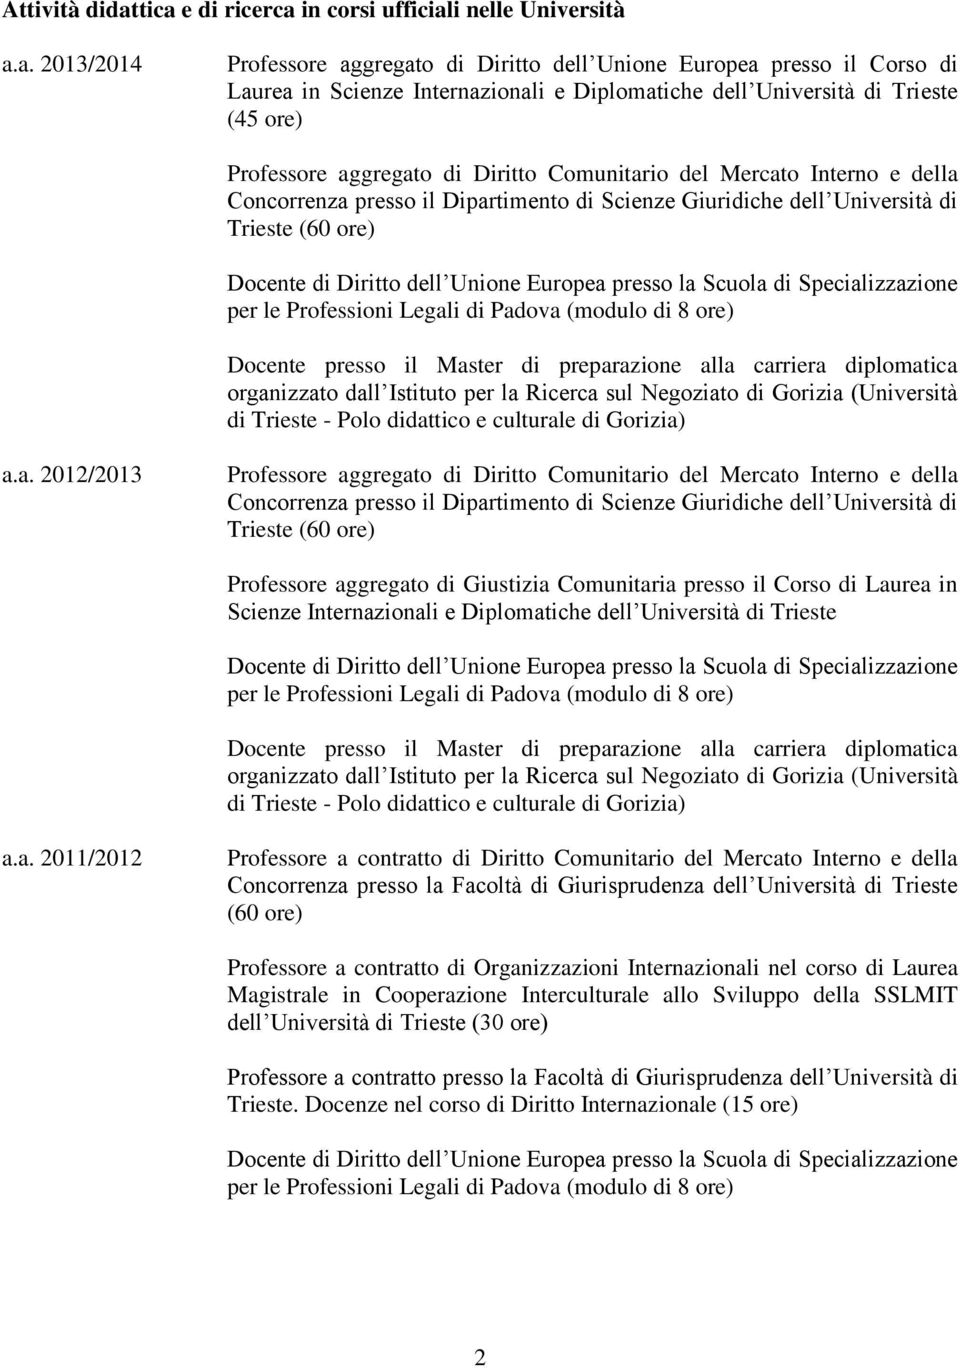 Università di Trieste (45 ore) Professore aggregato di Diritto Comunitario del Mercato Interno e della Concorrenza presso il Dipartimento di Scienze Giuridiche dell Università di Trieste (60 ore)